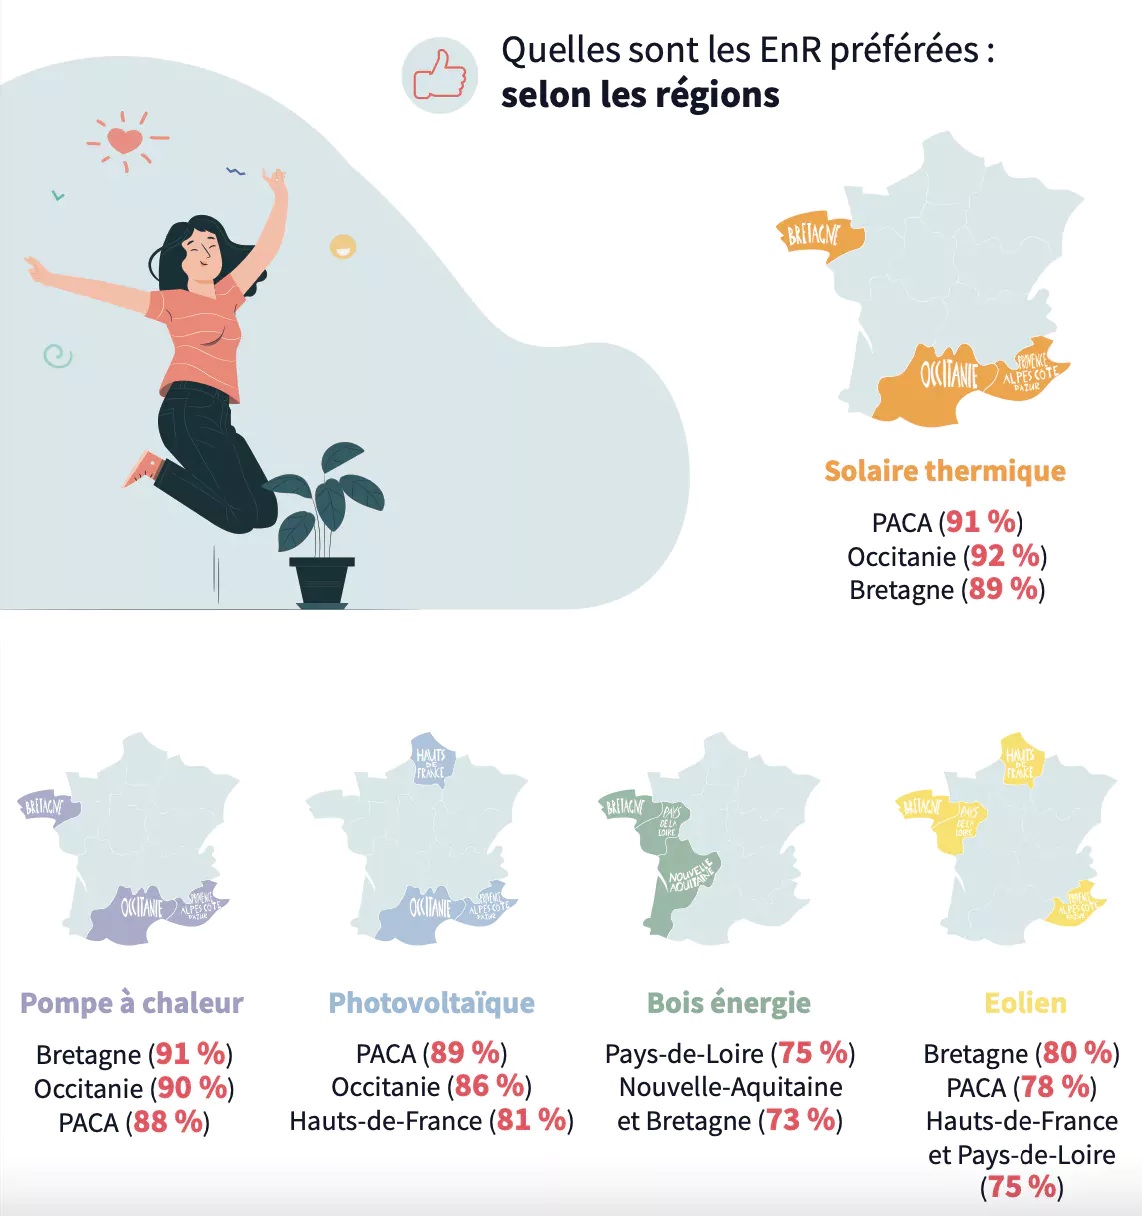 LA PAC dans la presse : 44 % des Français possèdent un équipement utilisant les EnR